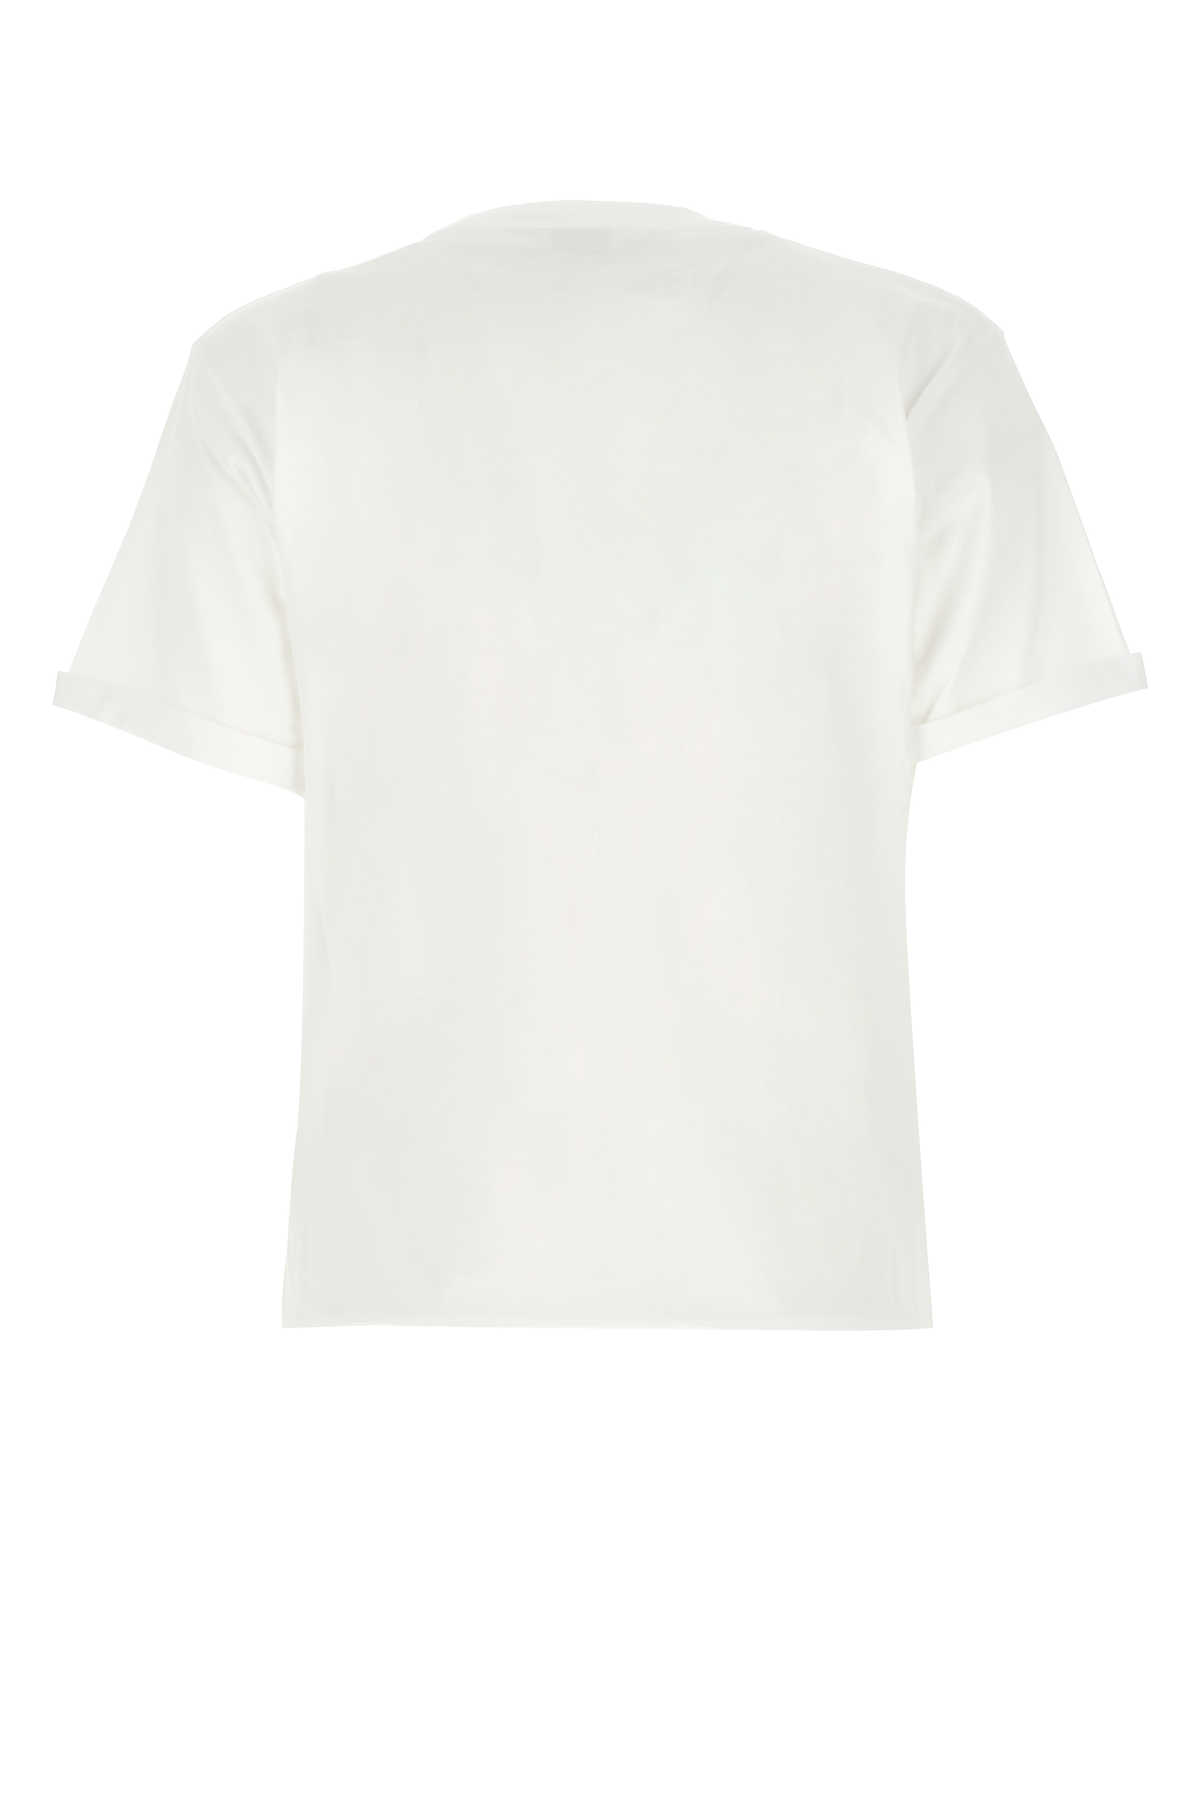 Saint Laurent White Cotton T-shirt In 9000